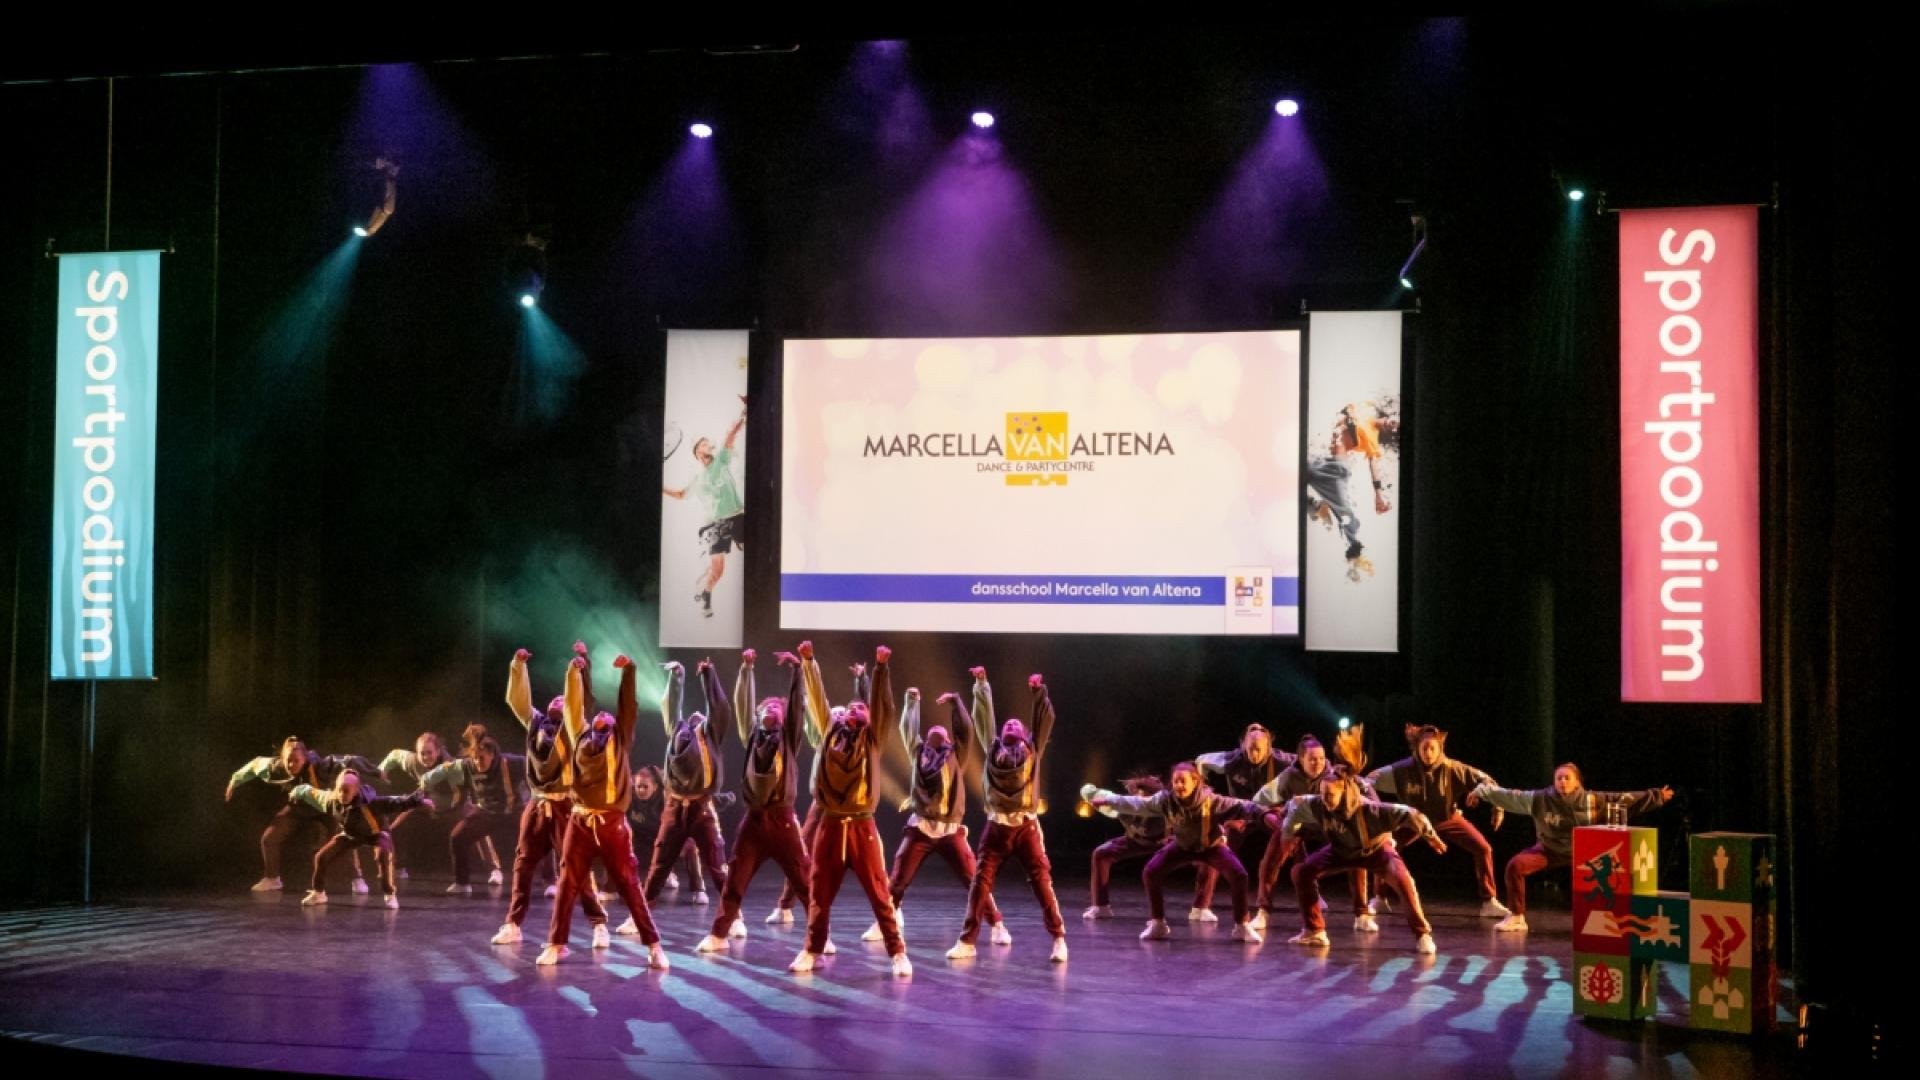 Dansers van dansschool Marcella van Altena treden op tijdens Sportpodium 2022